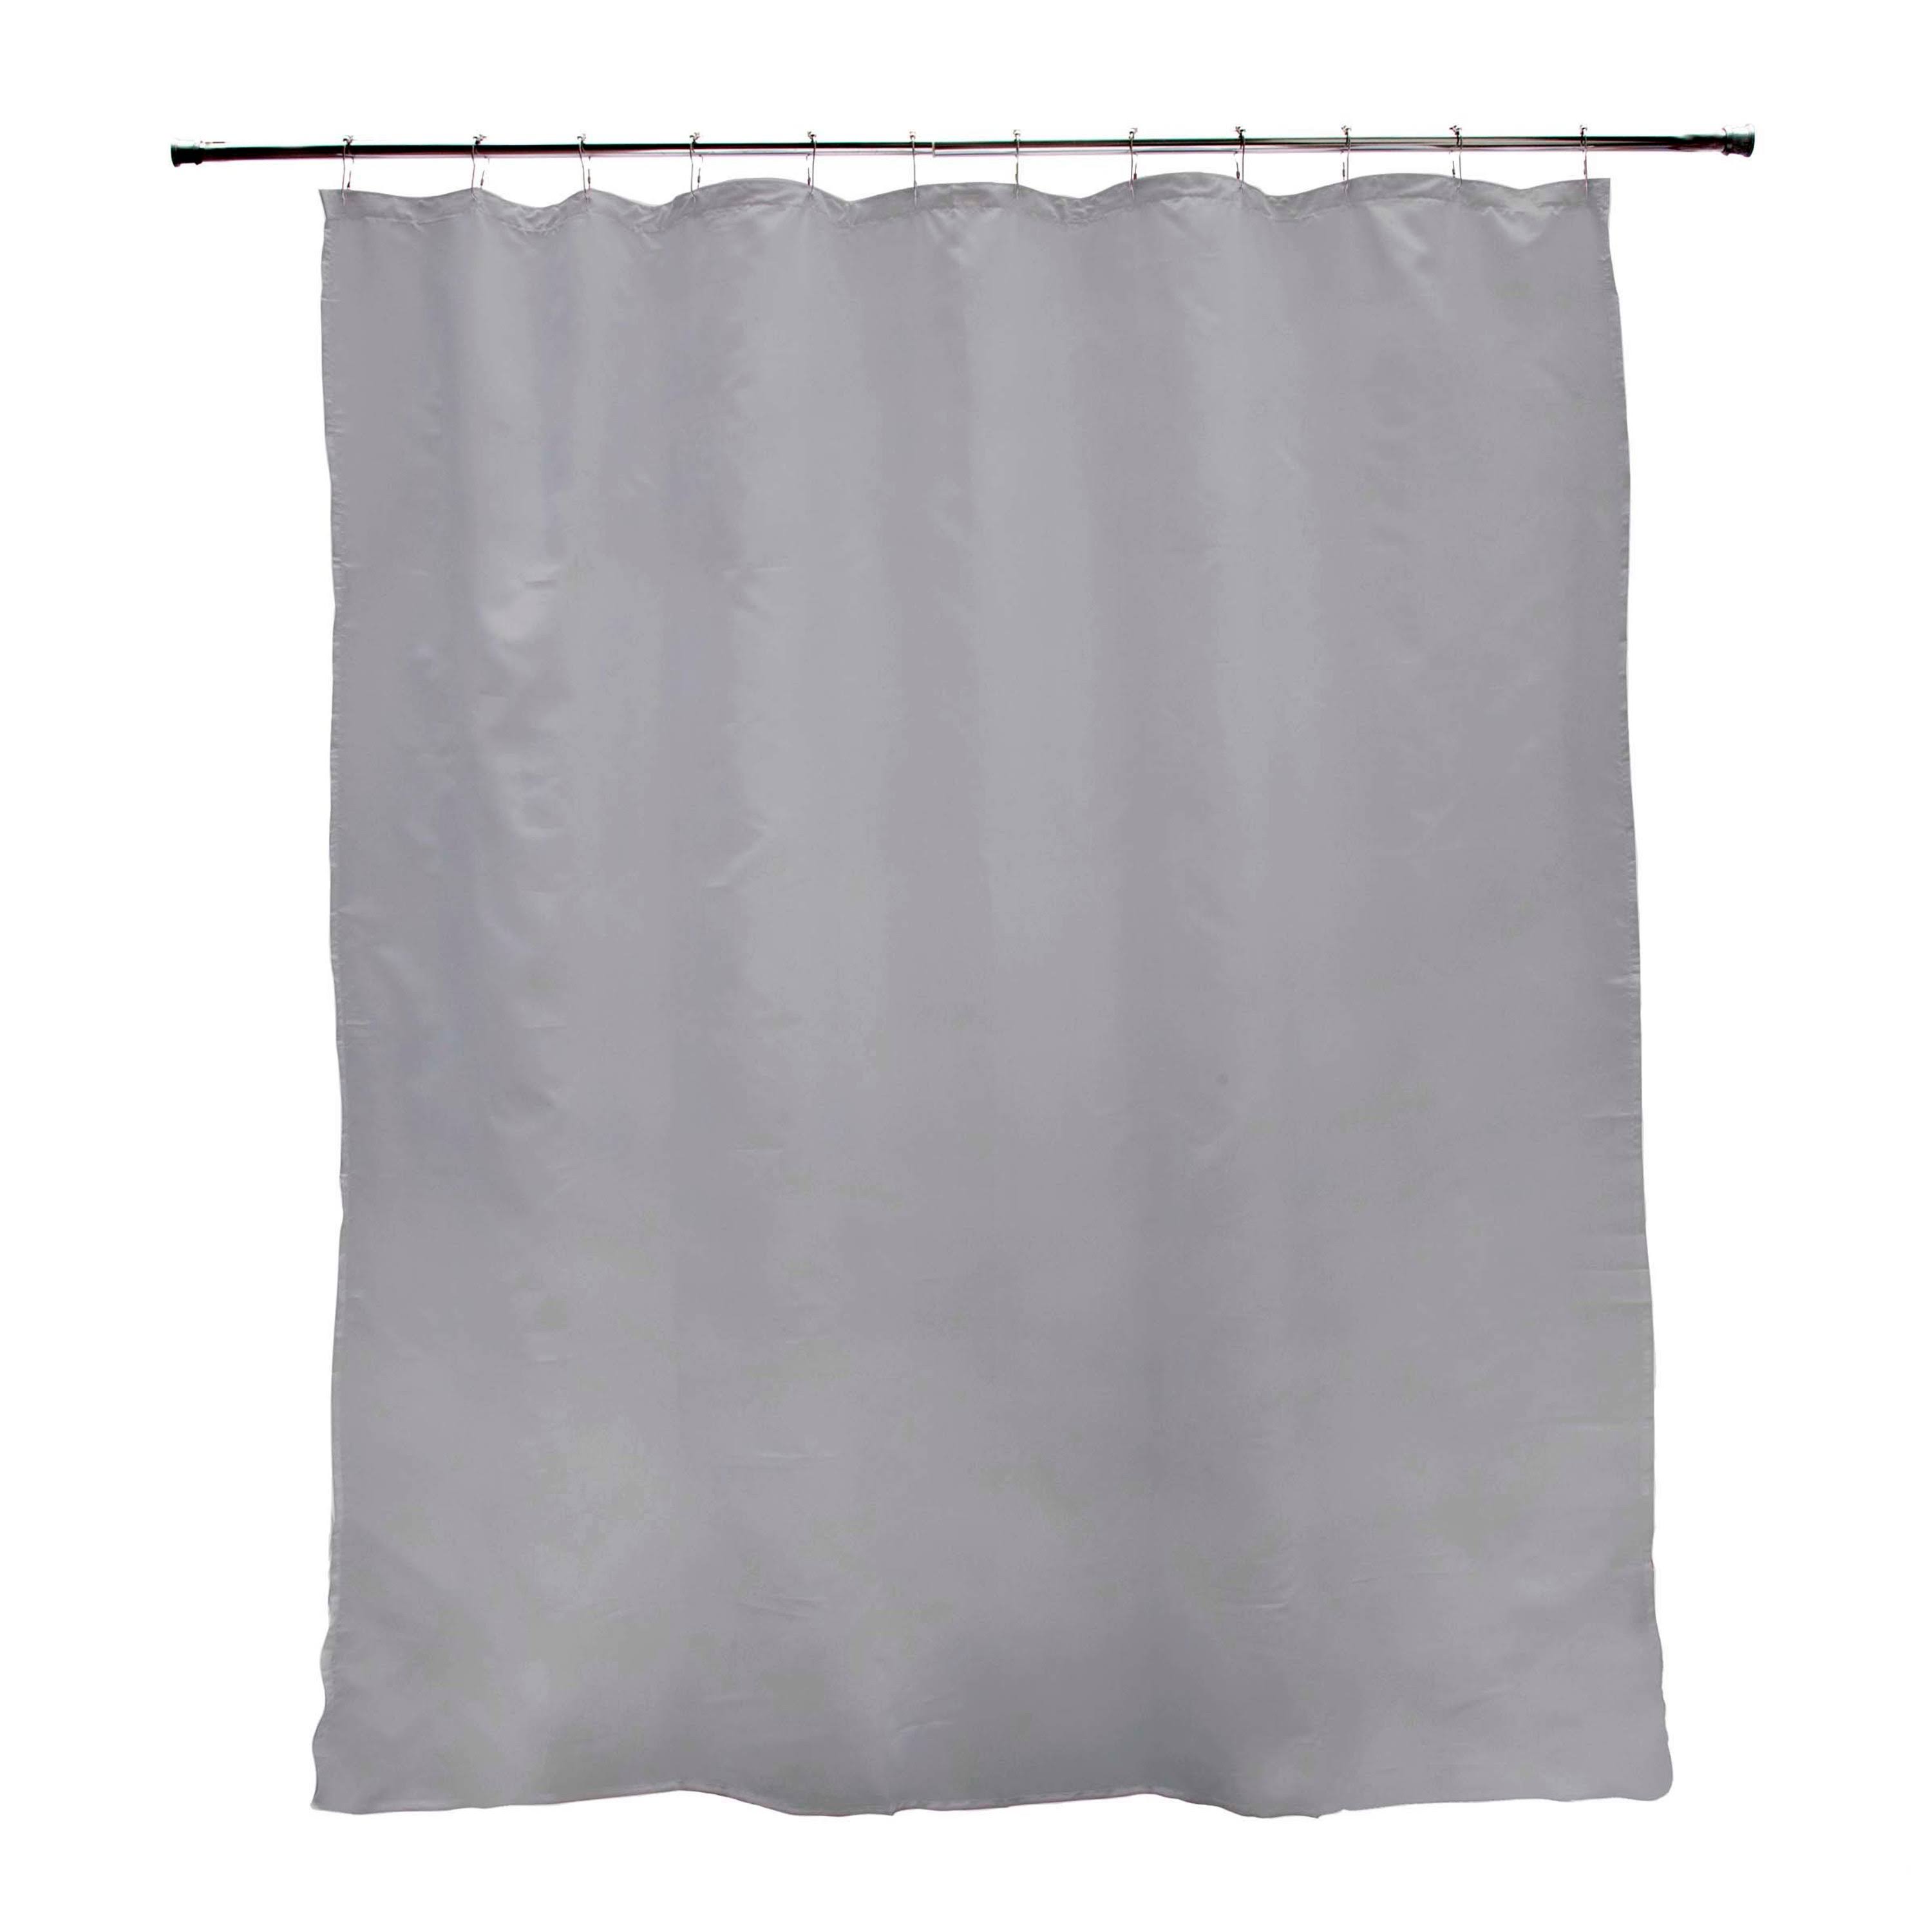 Kenney Medium Weight Peva Shower Curtain Liner - Gray